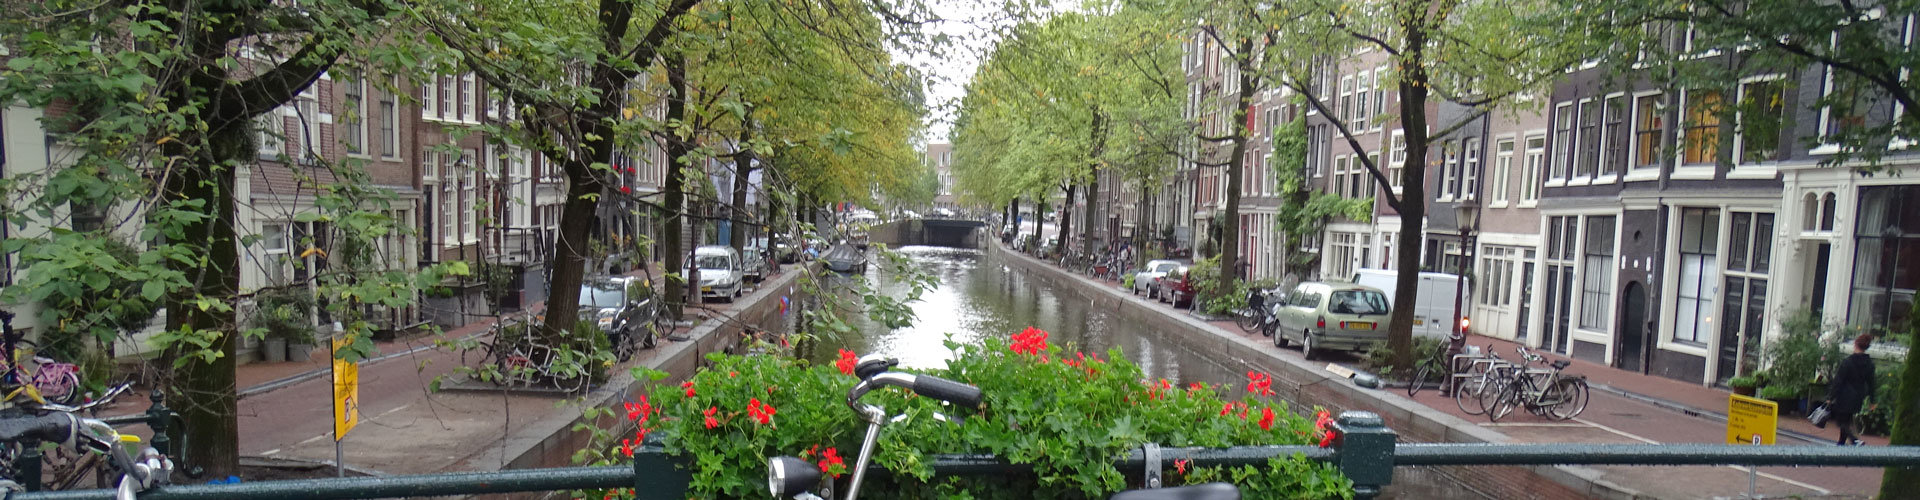 Boot huren in Amsterdam